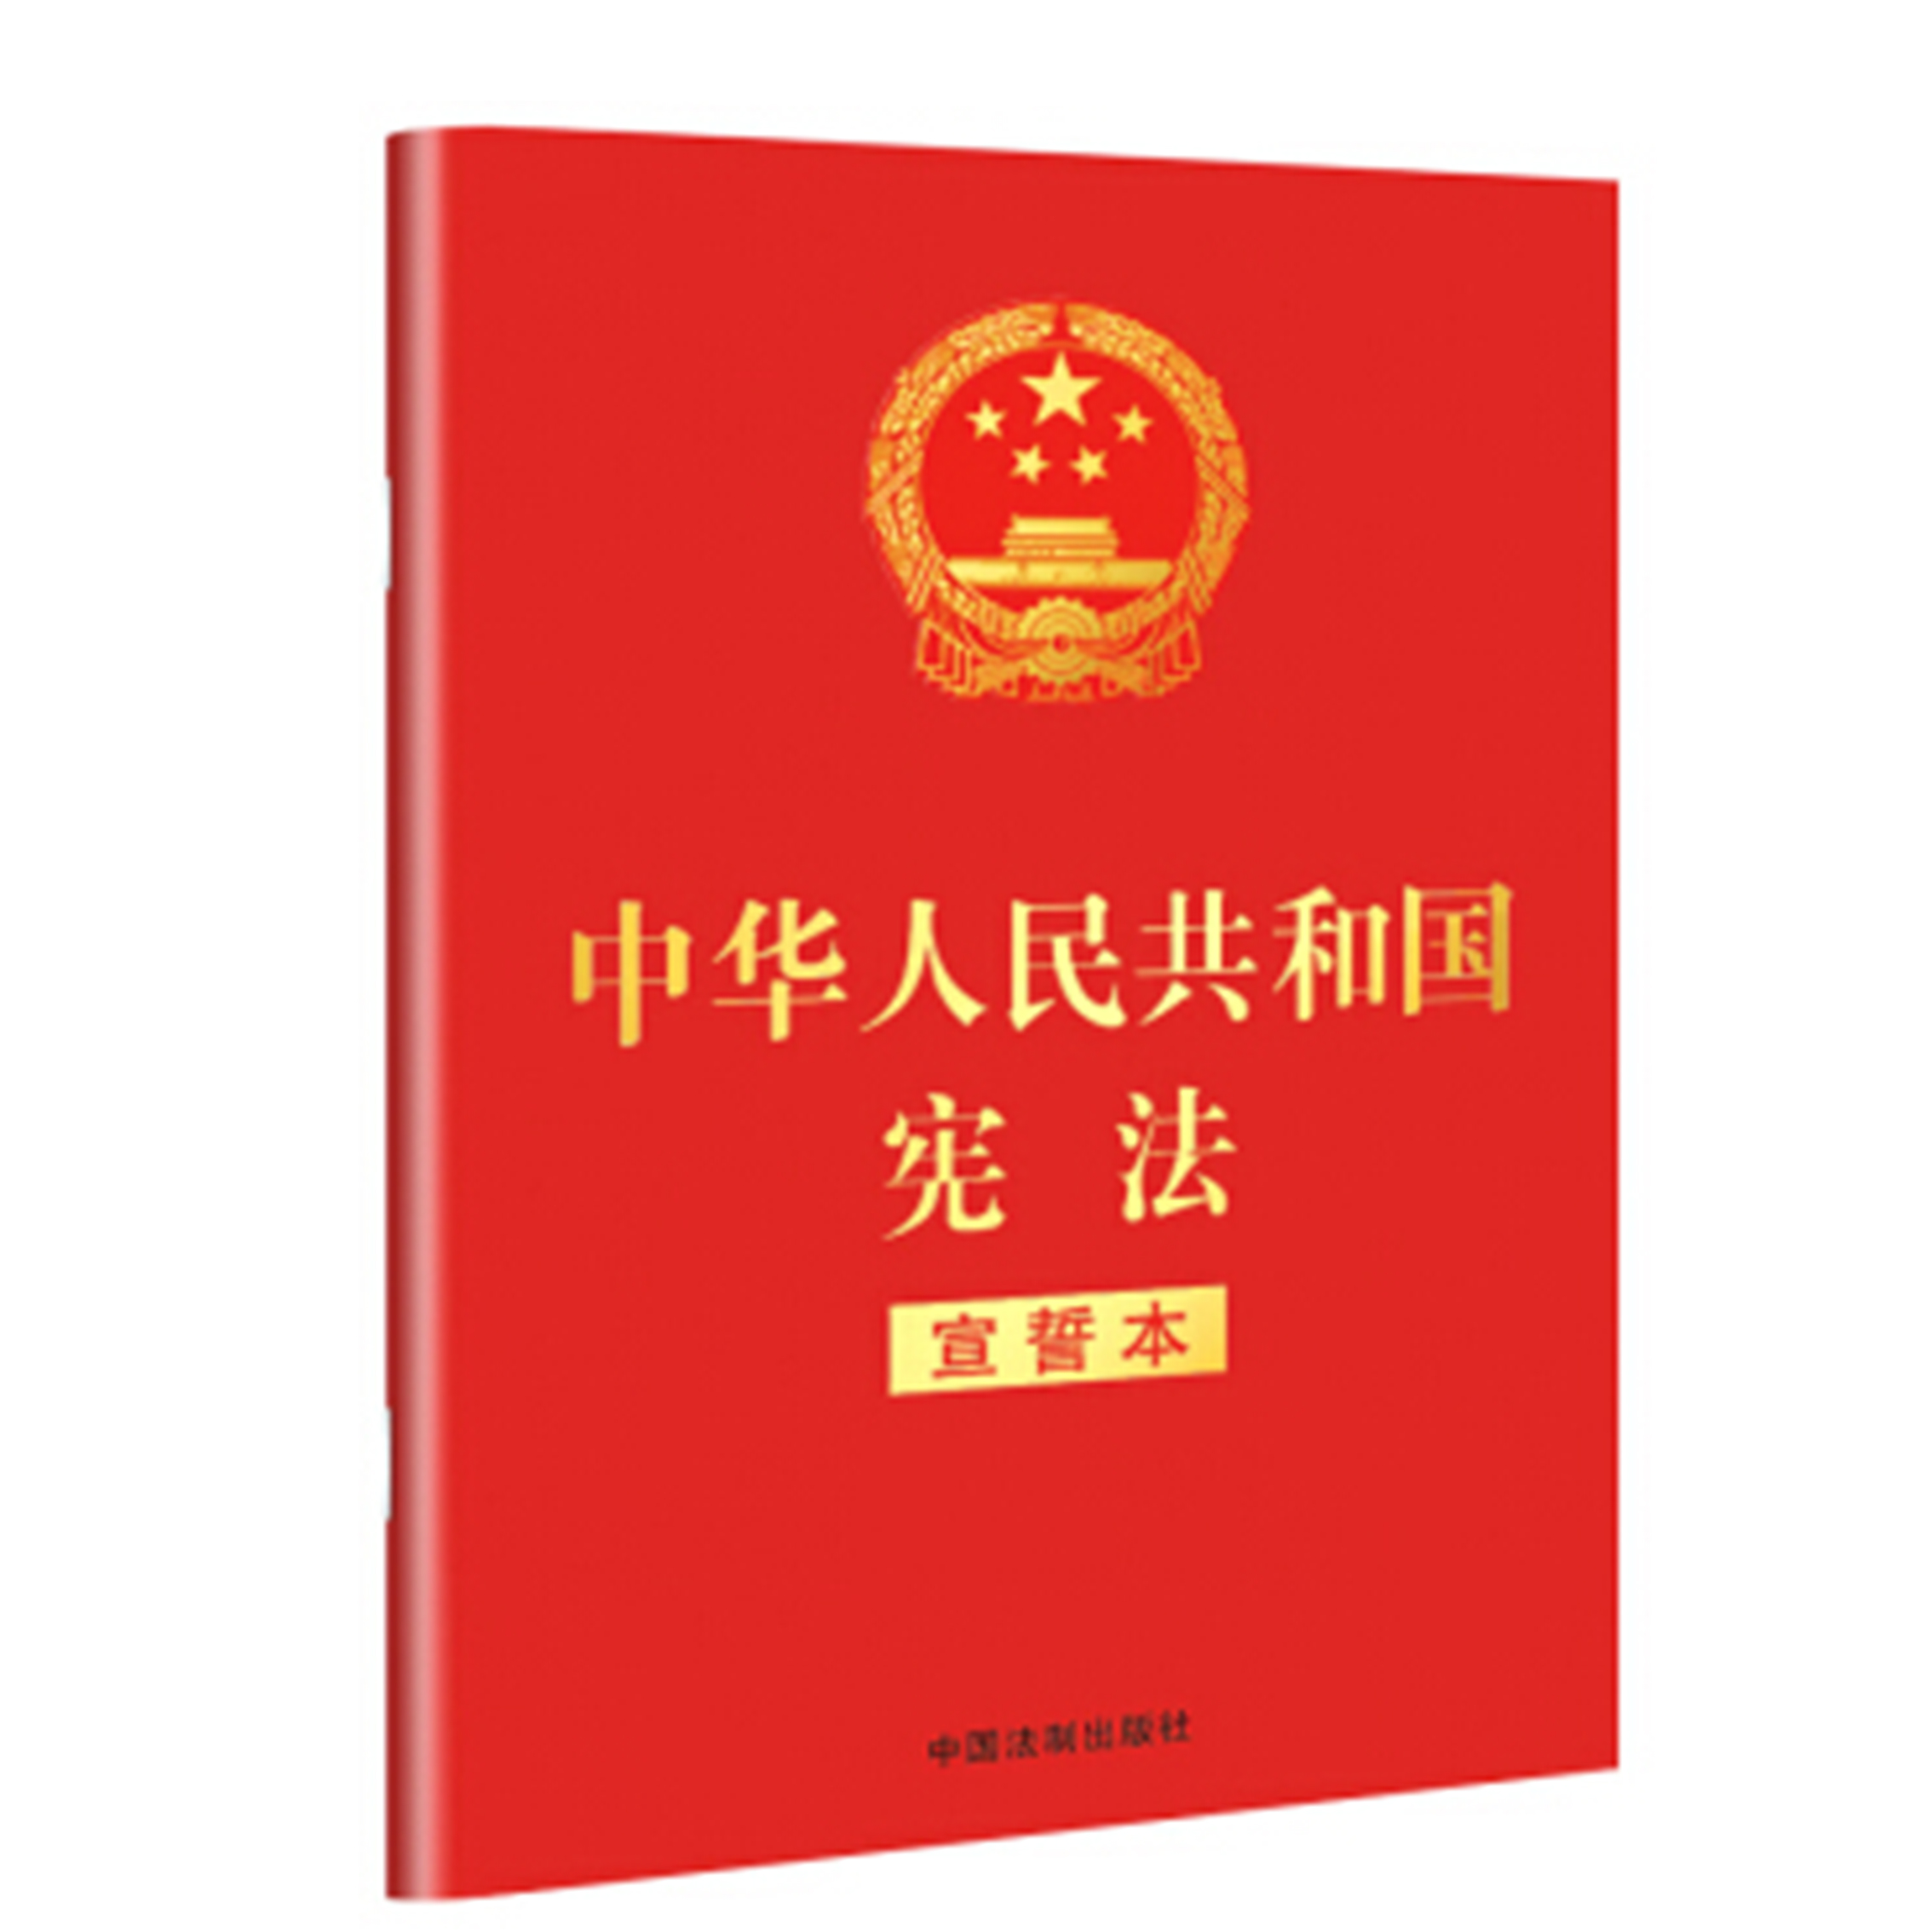 中华人民共和国宪法宣誓本